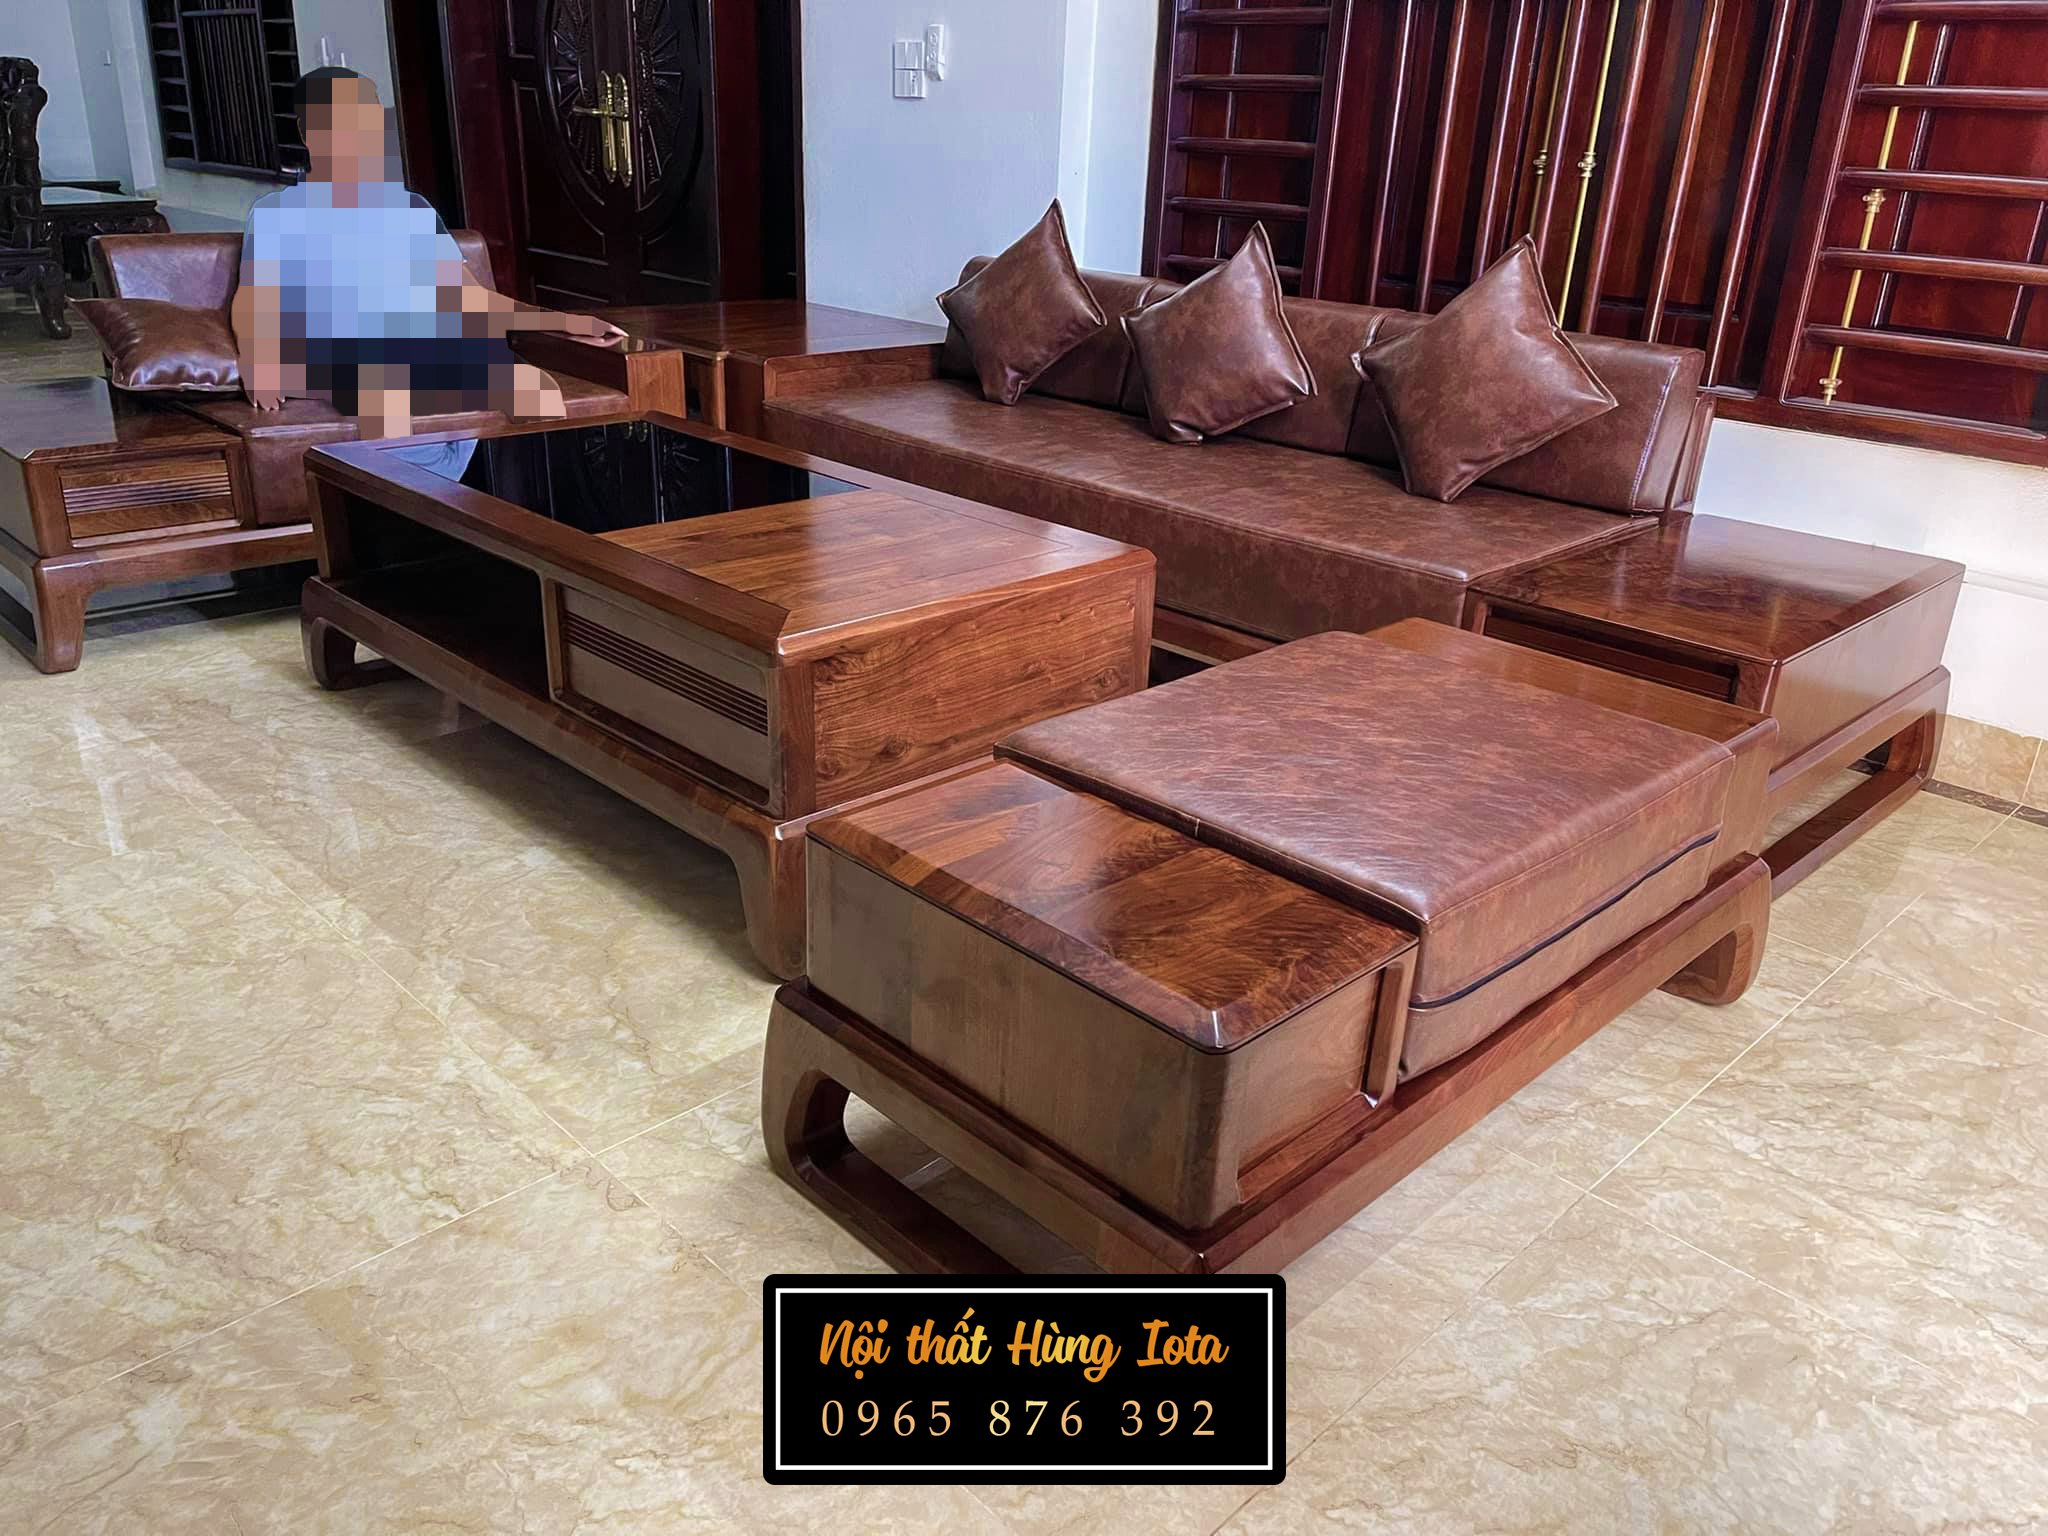 Lắp đặt sofa gỗ óc chó tại Quảng Ninh đẹp sang trọng